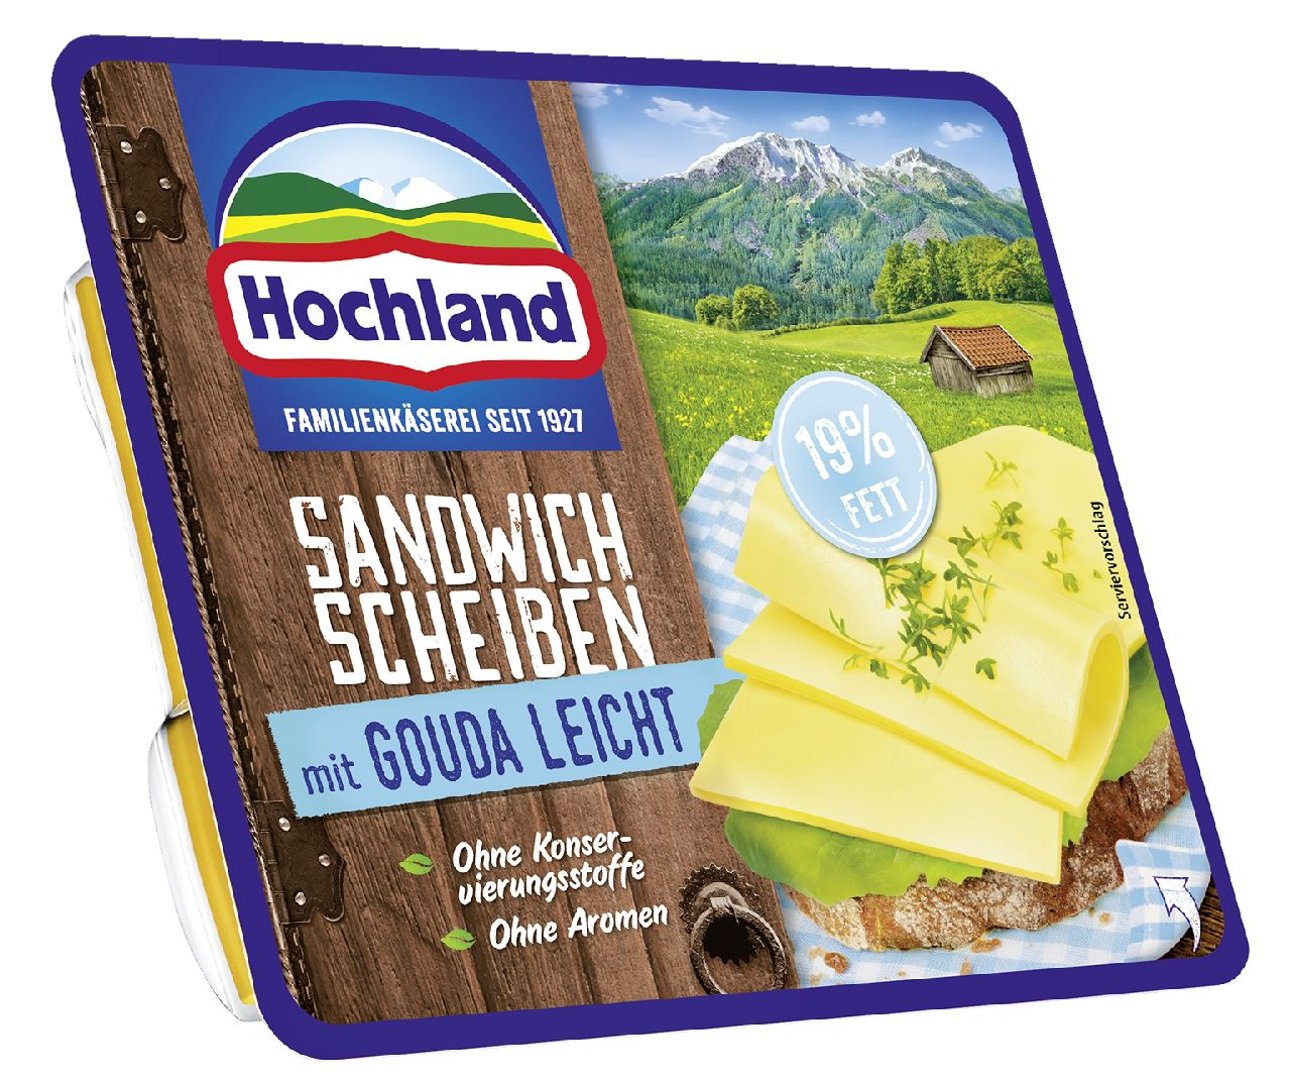 Hochland - Sandwich Scheiben mit Gouda leicht 19 % Fett 150 g Packung